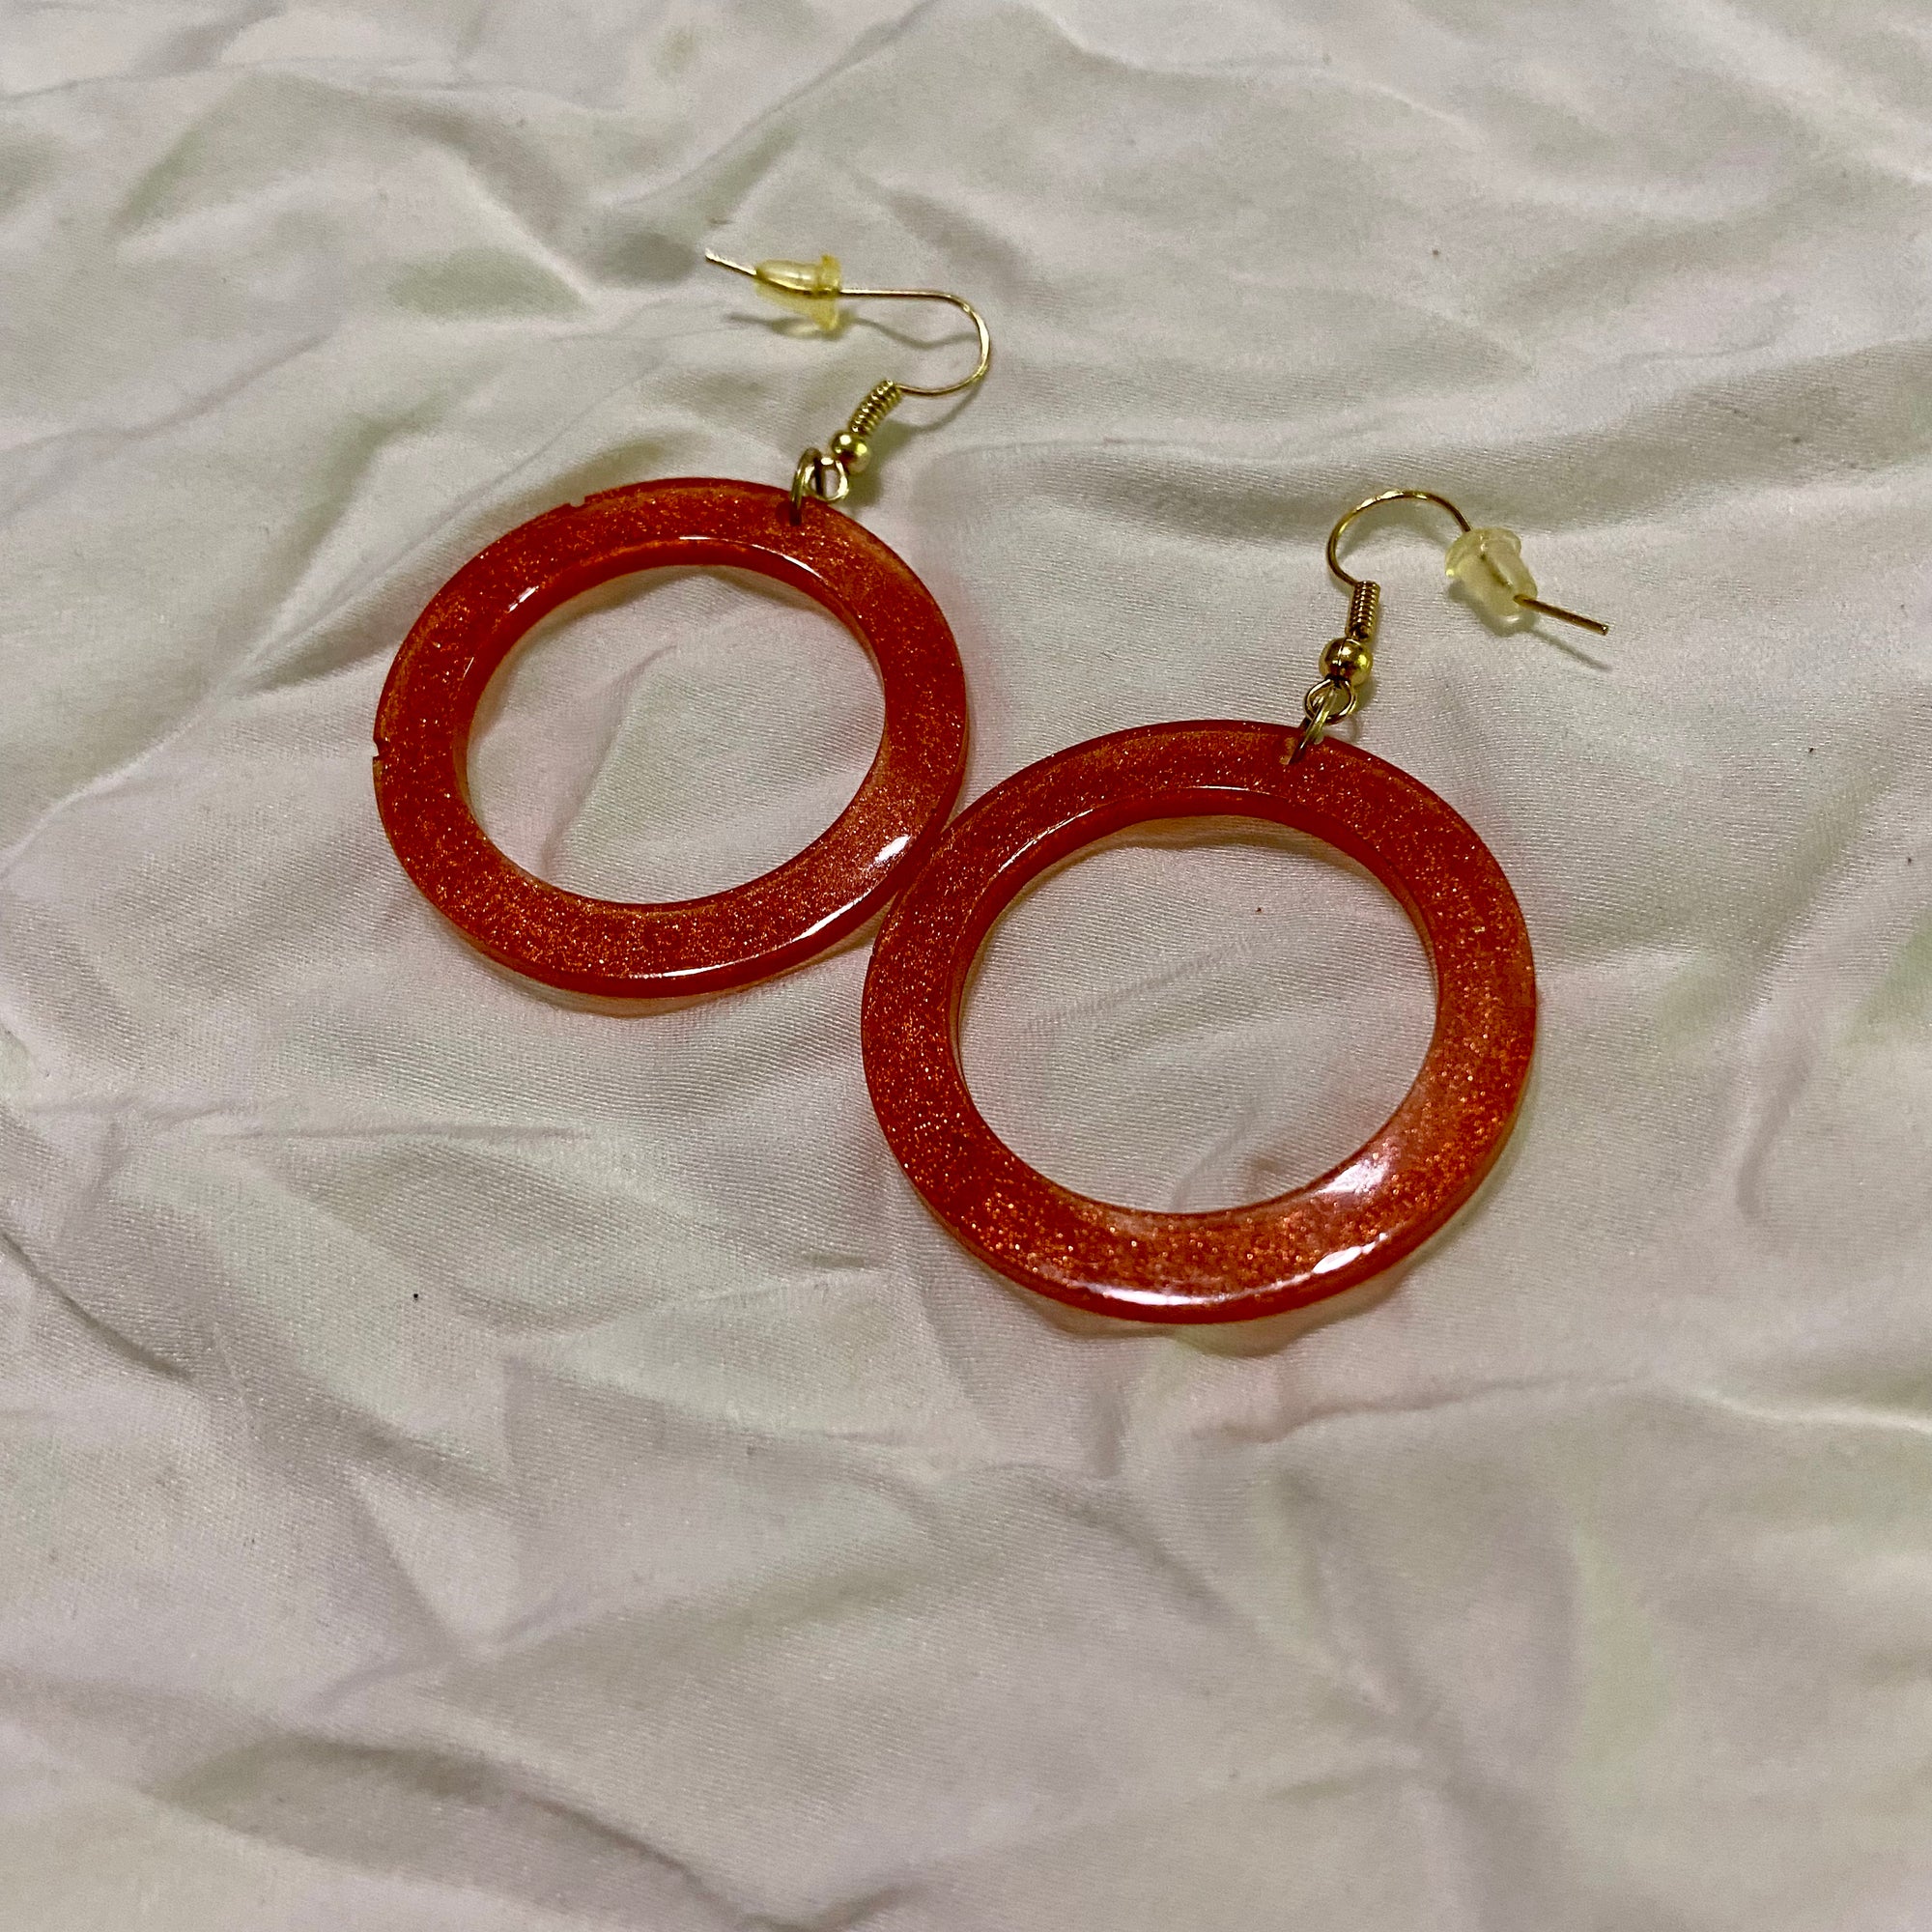 B. Light Earrings - Circular Orange Epoxy Earrings